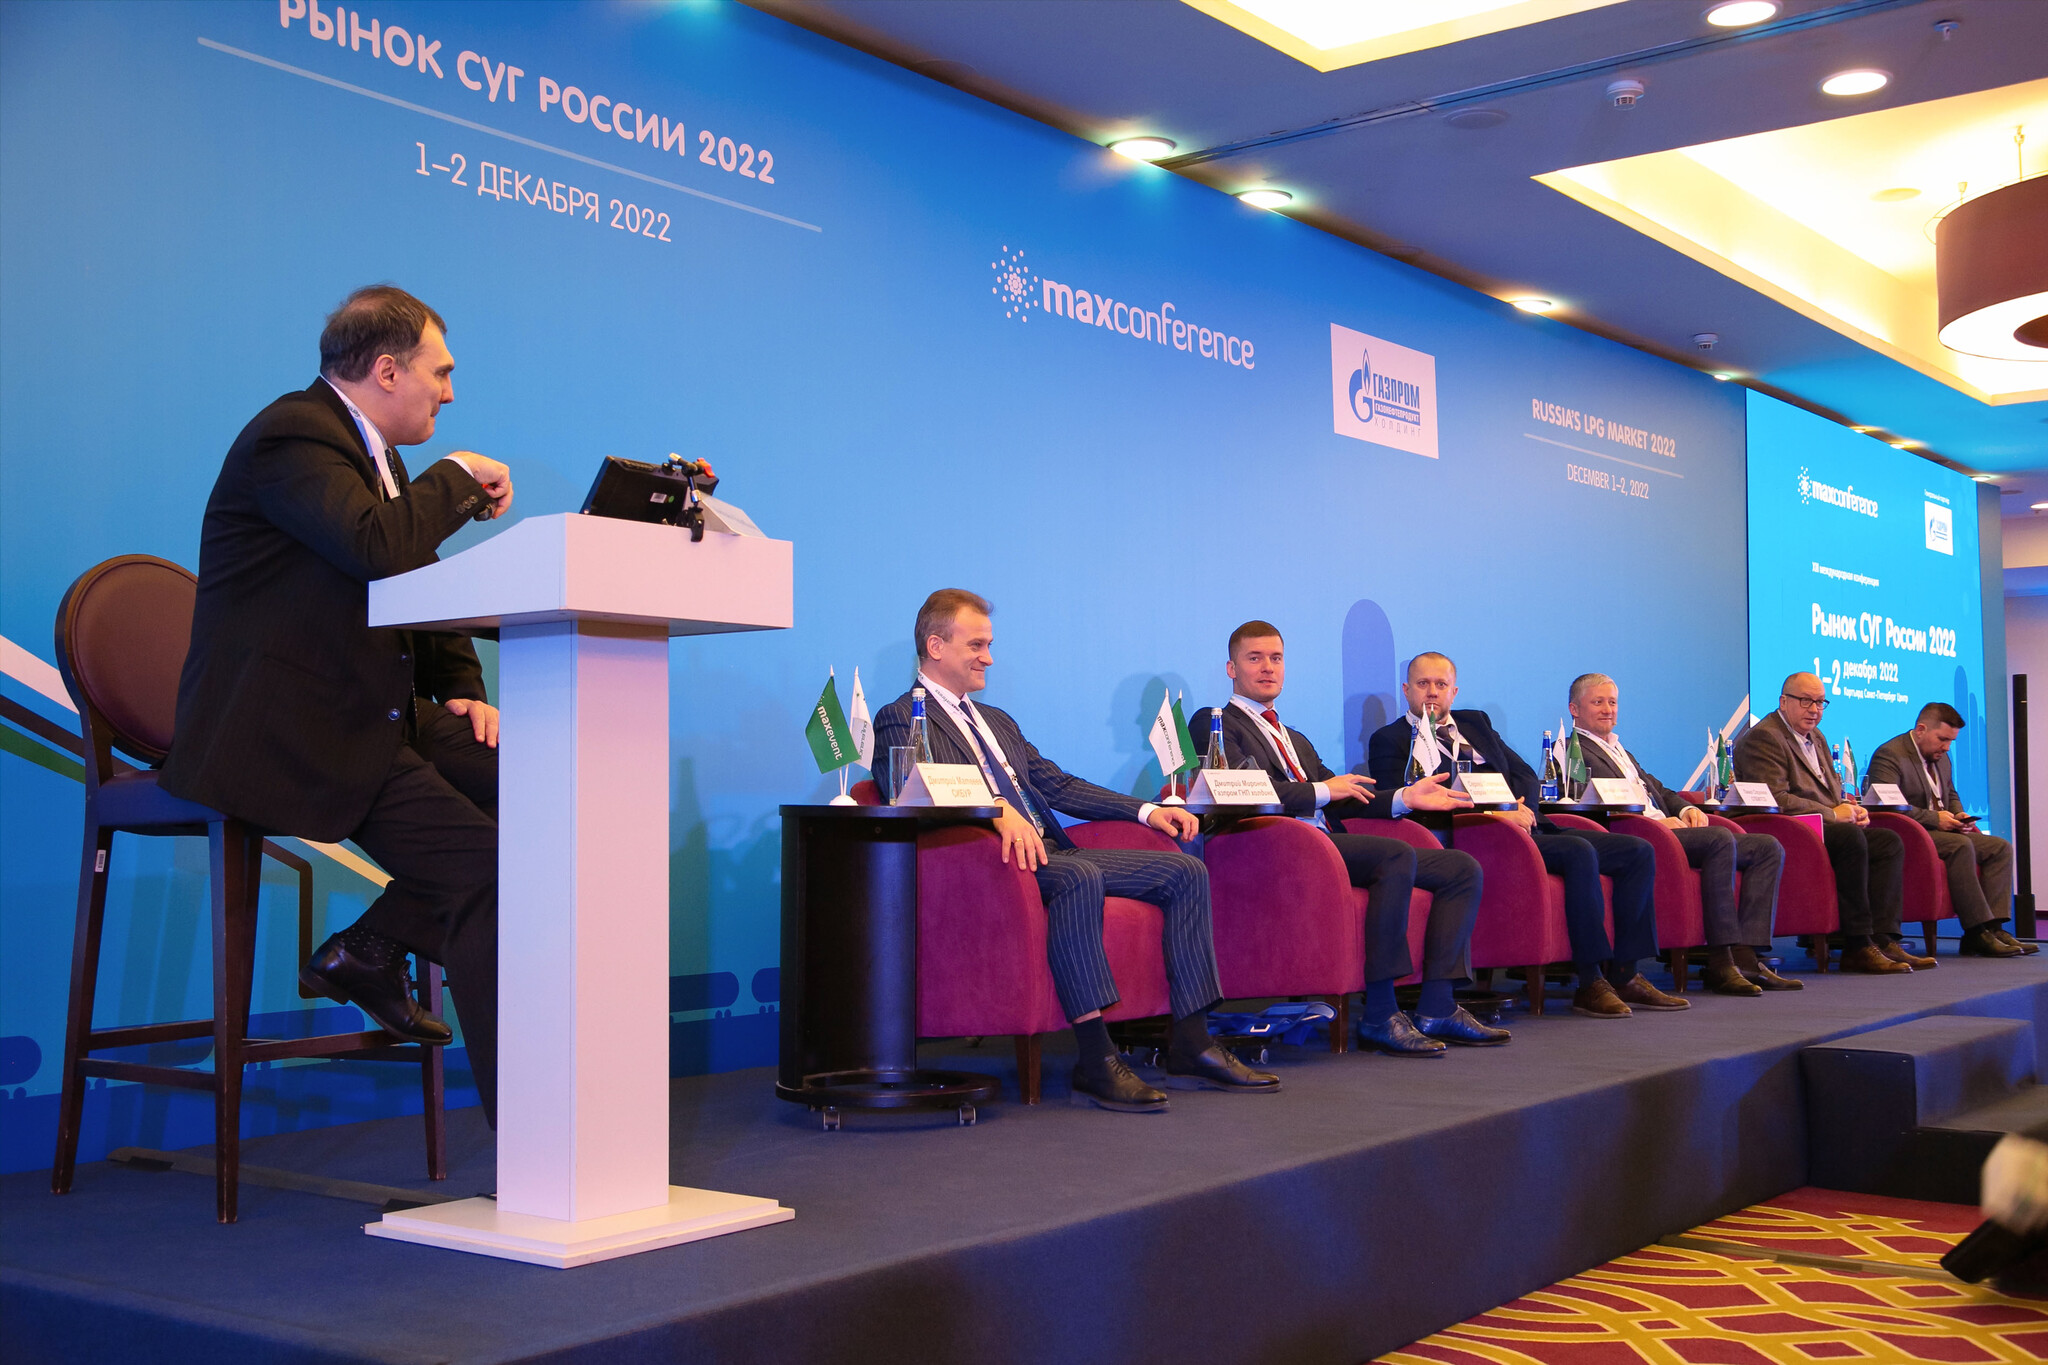 В конференции приняли участие более 200 делегатов: руководители и специалисты компаний Группы Газпром ГНП холдинг, представители Санкт-Петербургской международной товарно-сырьевой биржи, производители и поставщики сжиженных углеводородных газов (СУГ), собственники и операторы АГЗС, а также эксперты рынка.